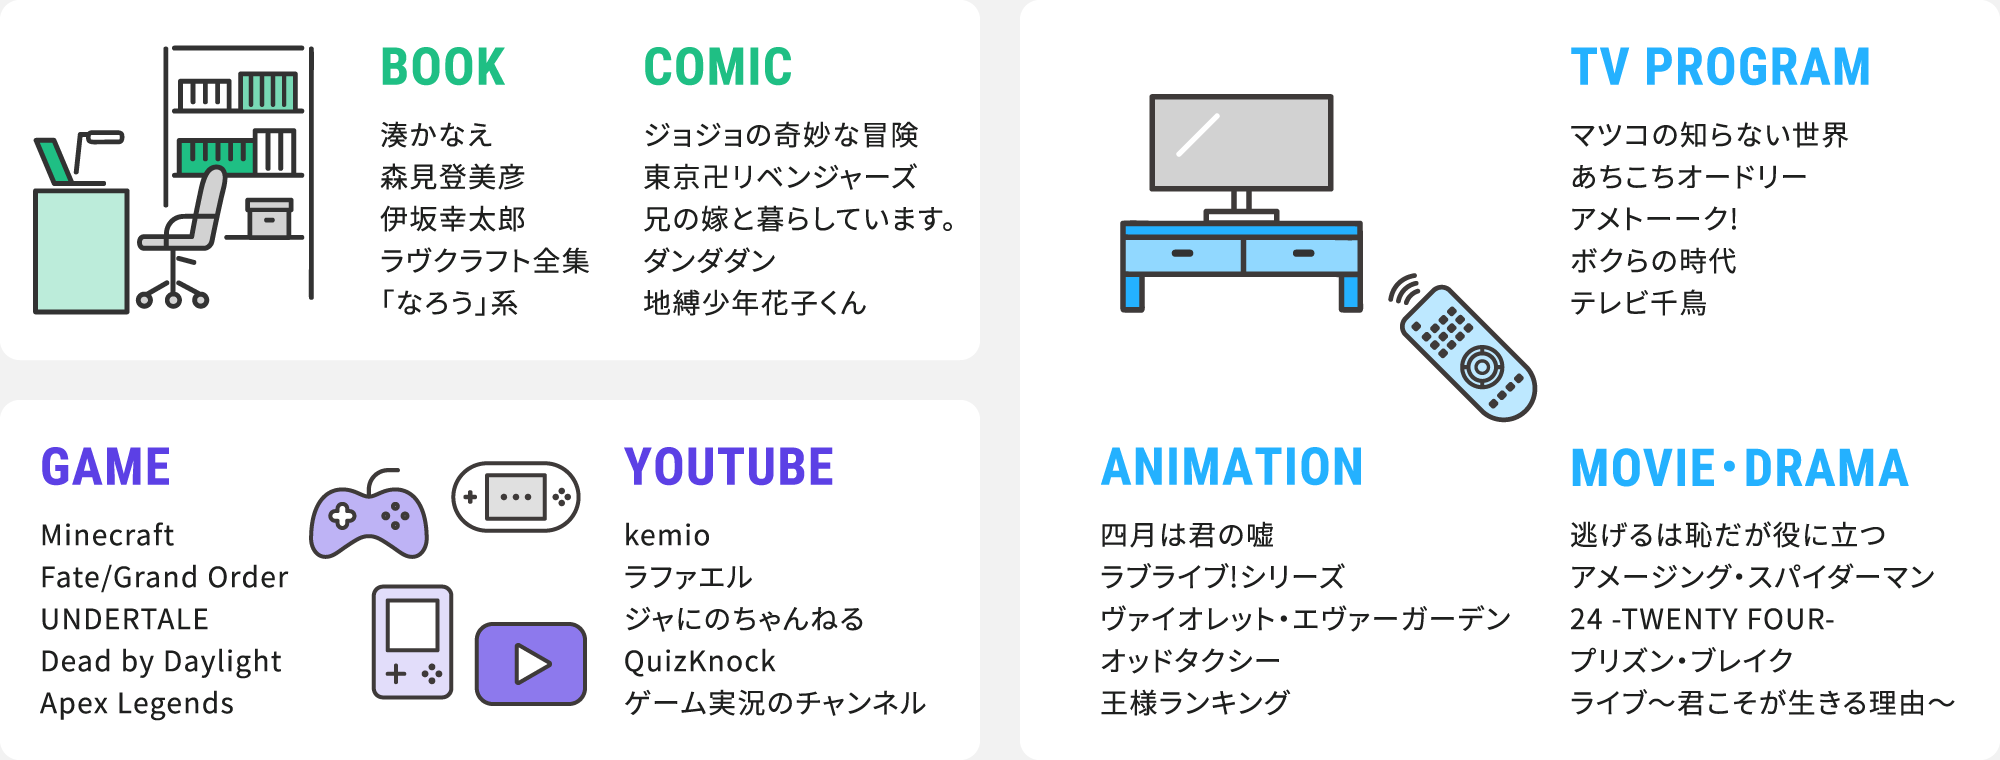 好きな本・マンガ・アニメ・TV番組・YouTubeチャンネル・ゲームは？